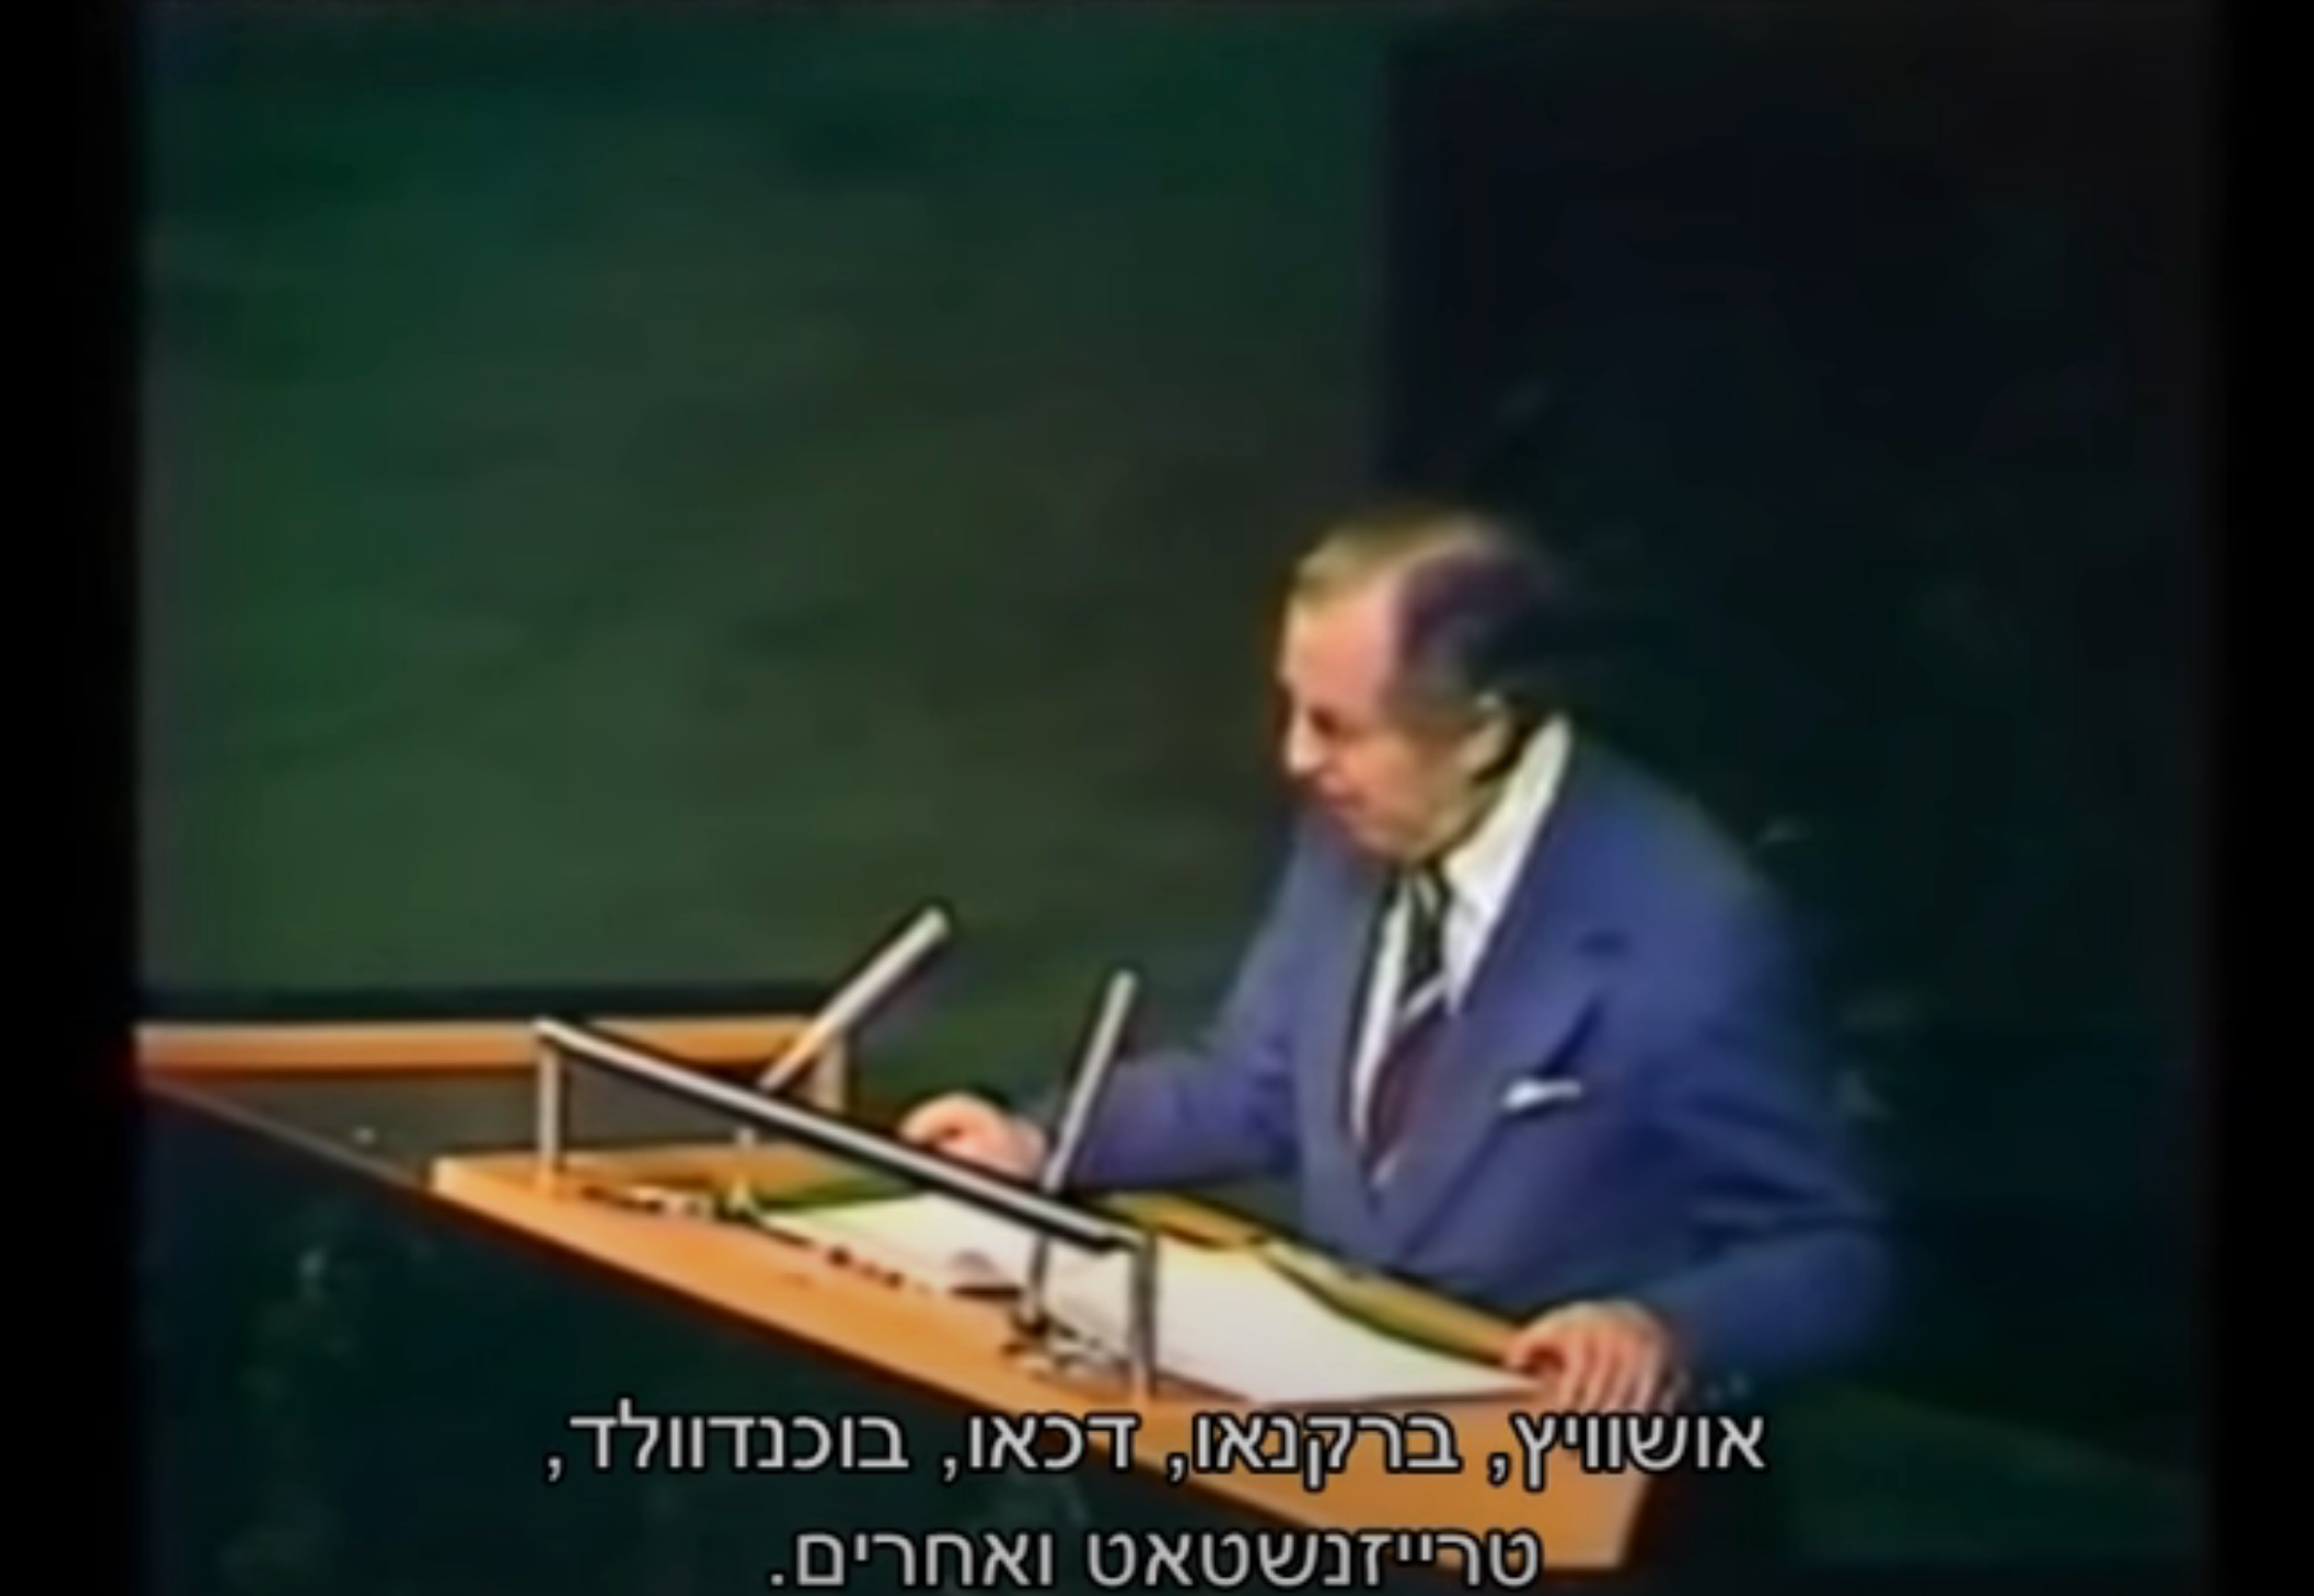 עיקרי נאומו ההיסטורי בעצרת האו"ם עם כתוביות בעברית